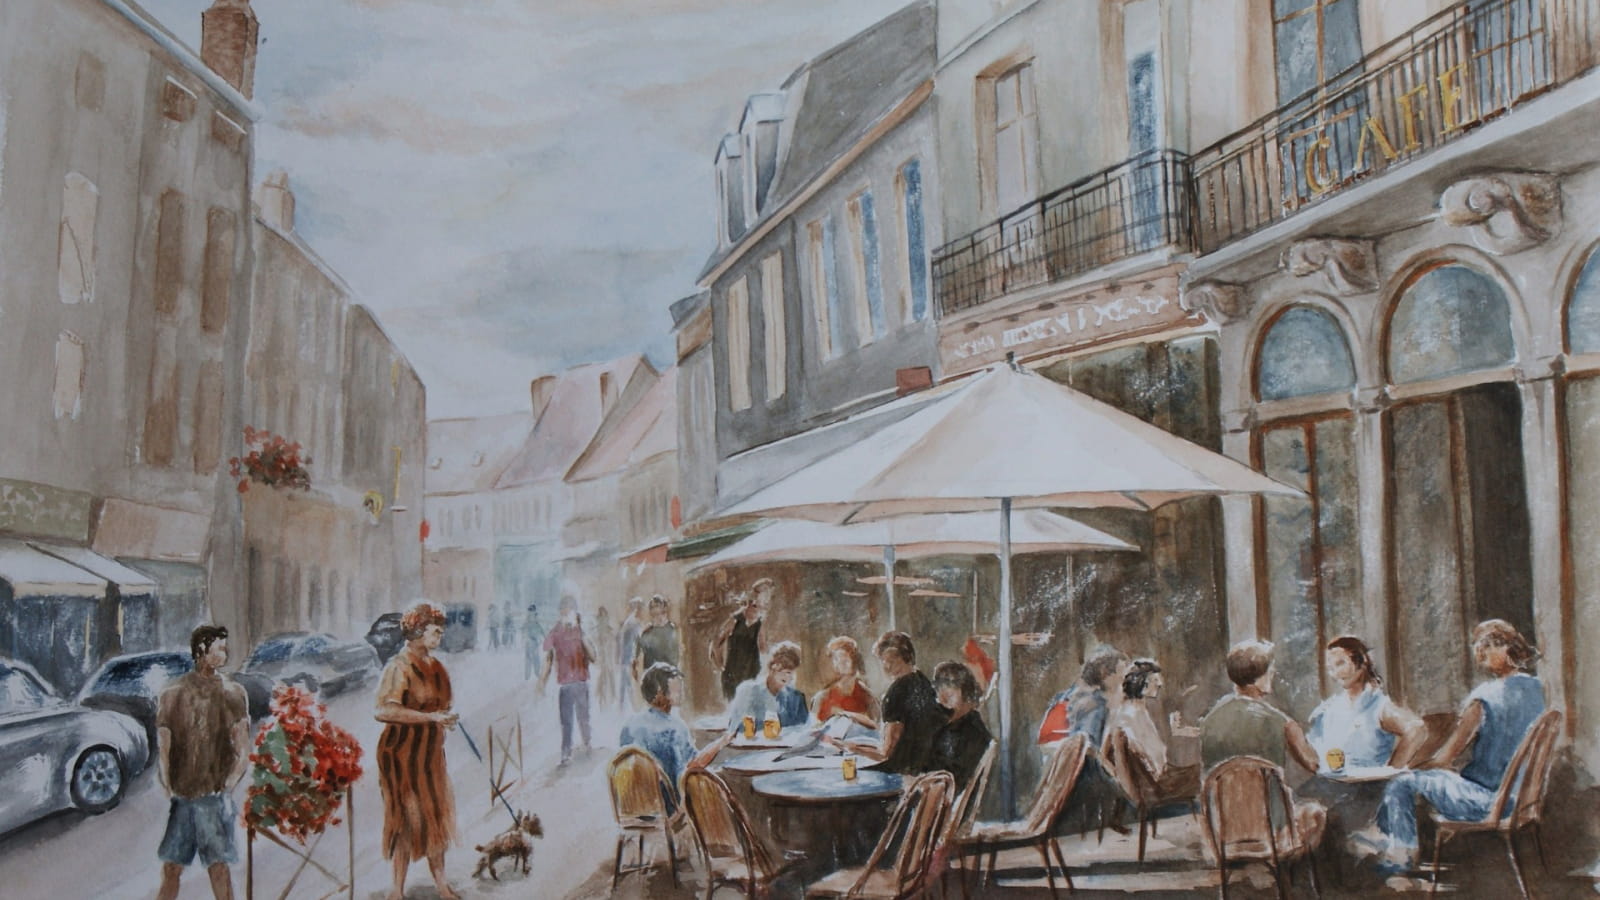 L'Ecurie - Atelier-exposition de peinture Pierre Labrousse